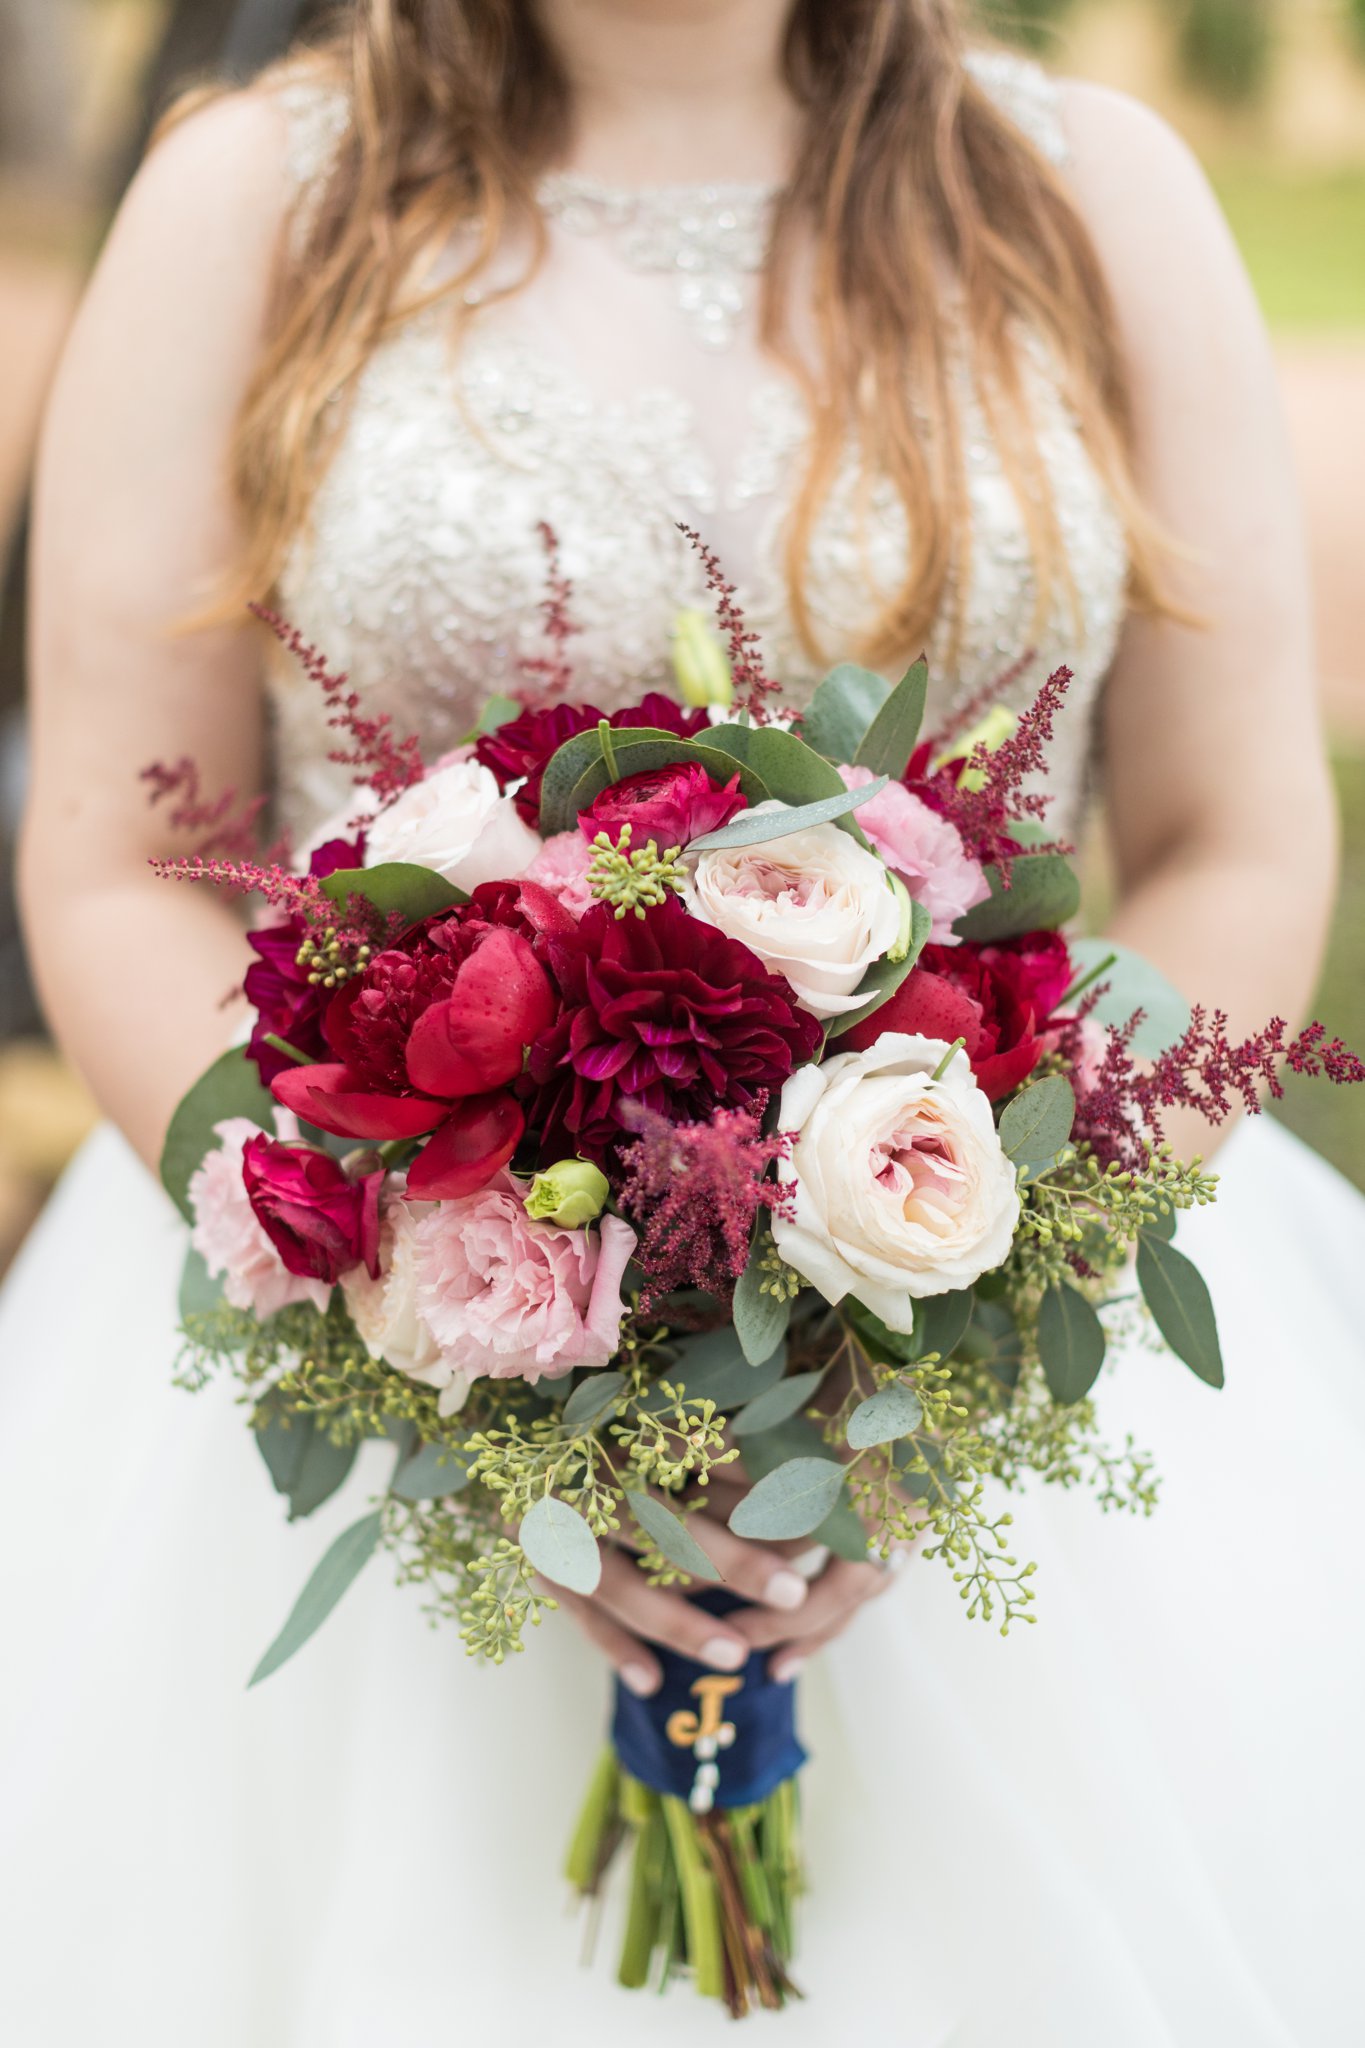 Fall Wedding Bouquet Inspiration by Dawn Elizabeth Studios, San Antonio Wedding Photographer